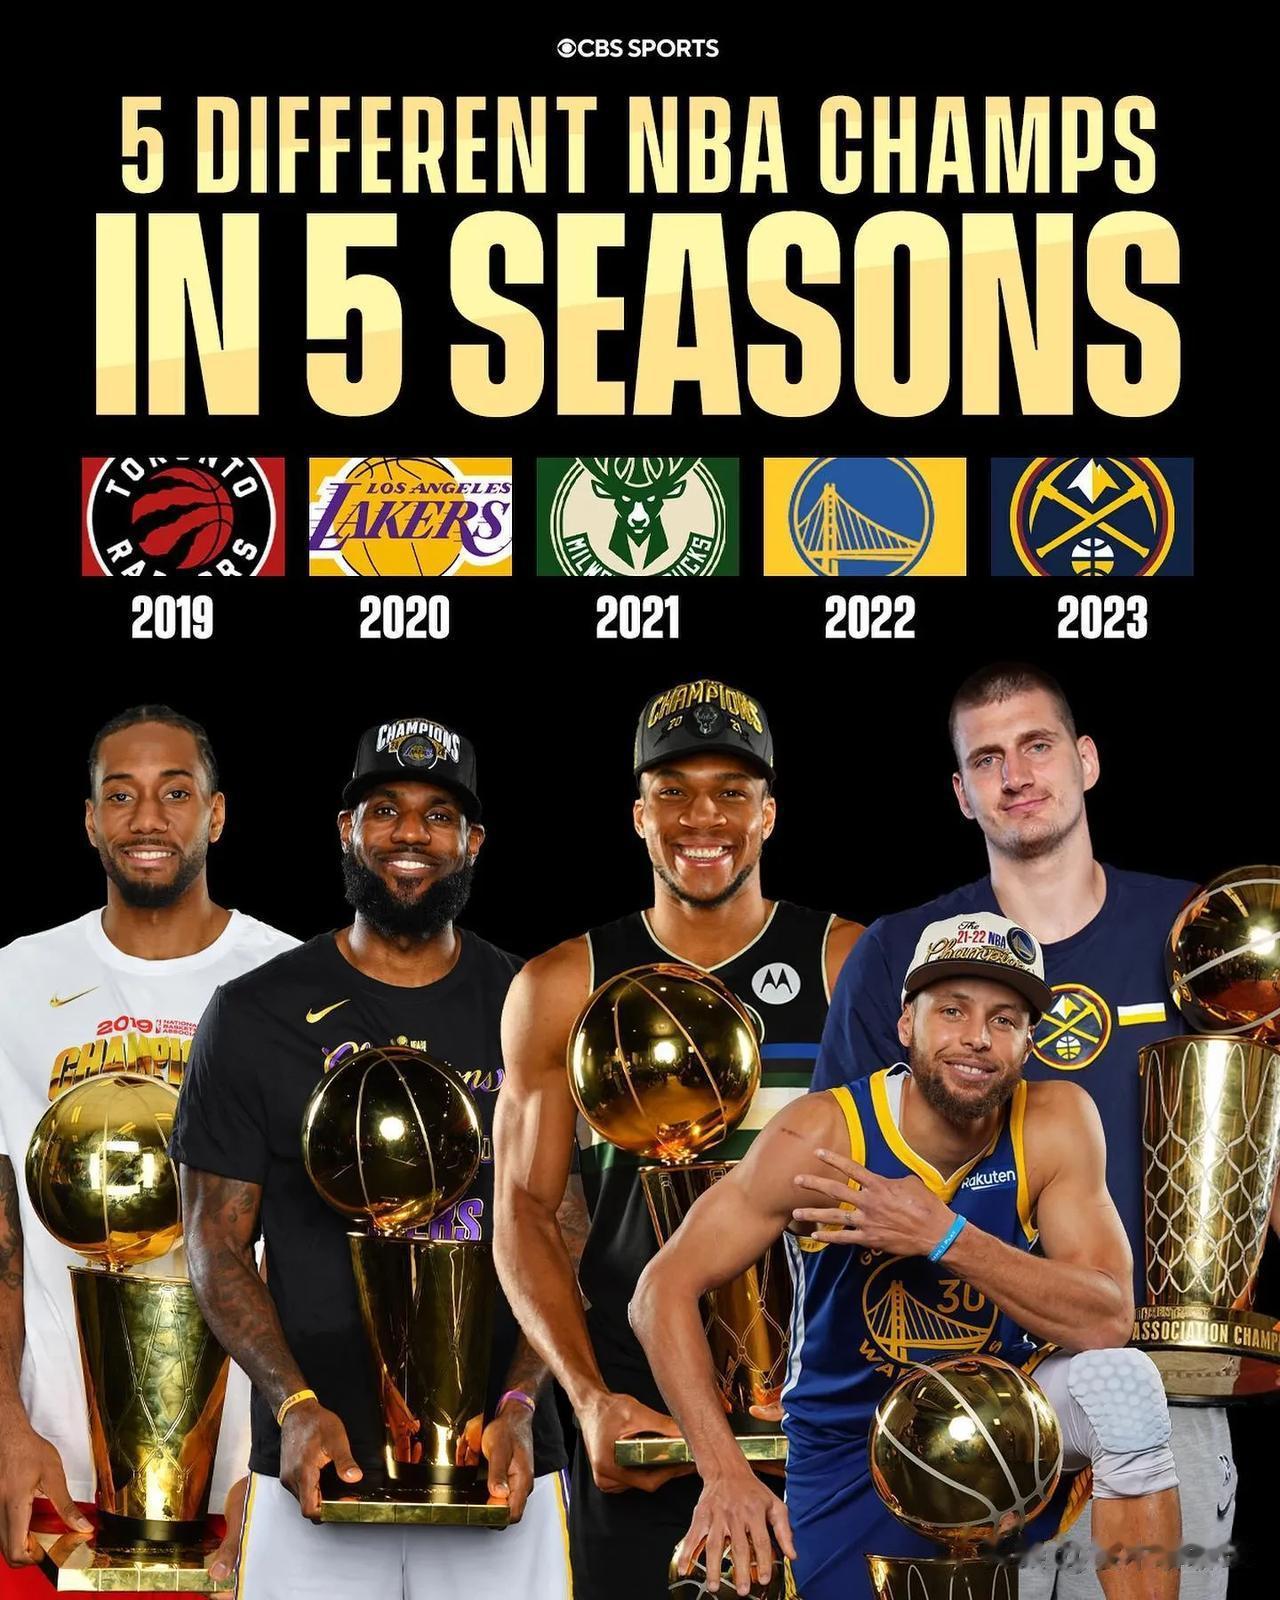 报团时代结束！近5年冠军没有超级三巨头
NBA近5年总冠军:
2019:猛龙
2